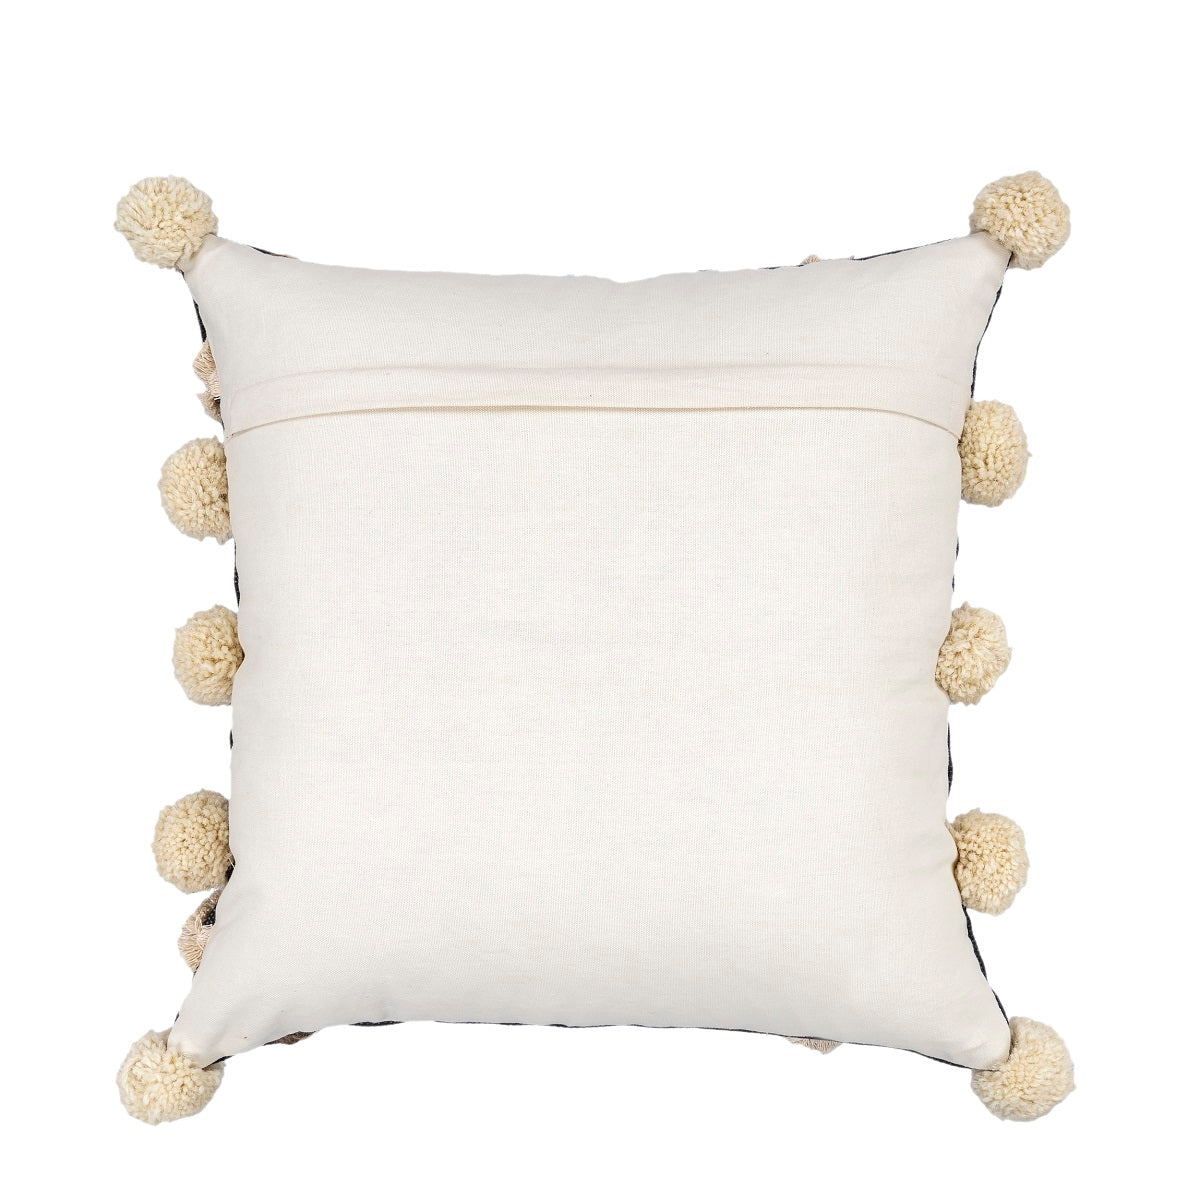 Moroccan Cushion Tassel Cushion Boho Cushion Hand Tufted Cushion Decorative l Pillow Lumber Pillow 50*50cm